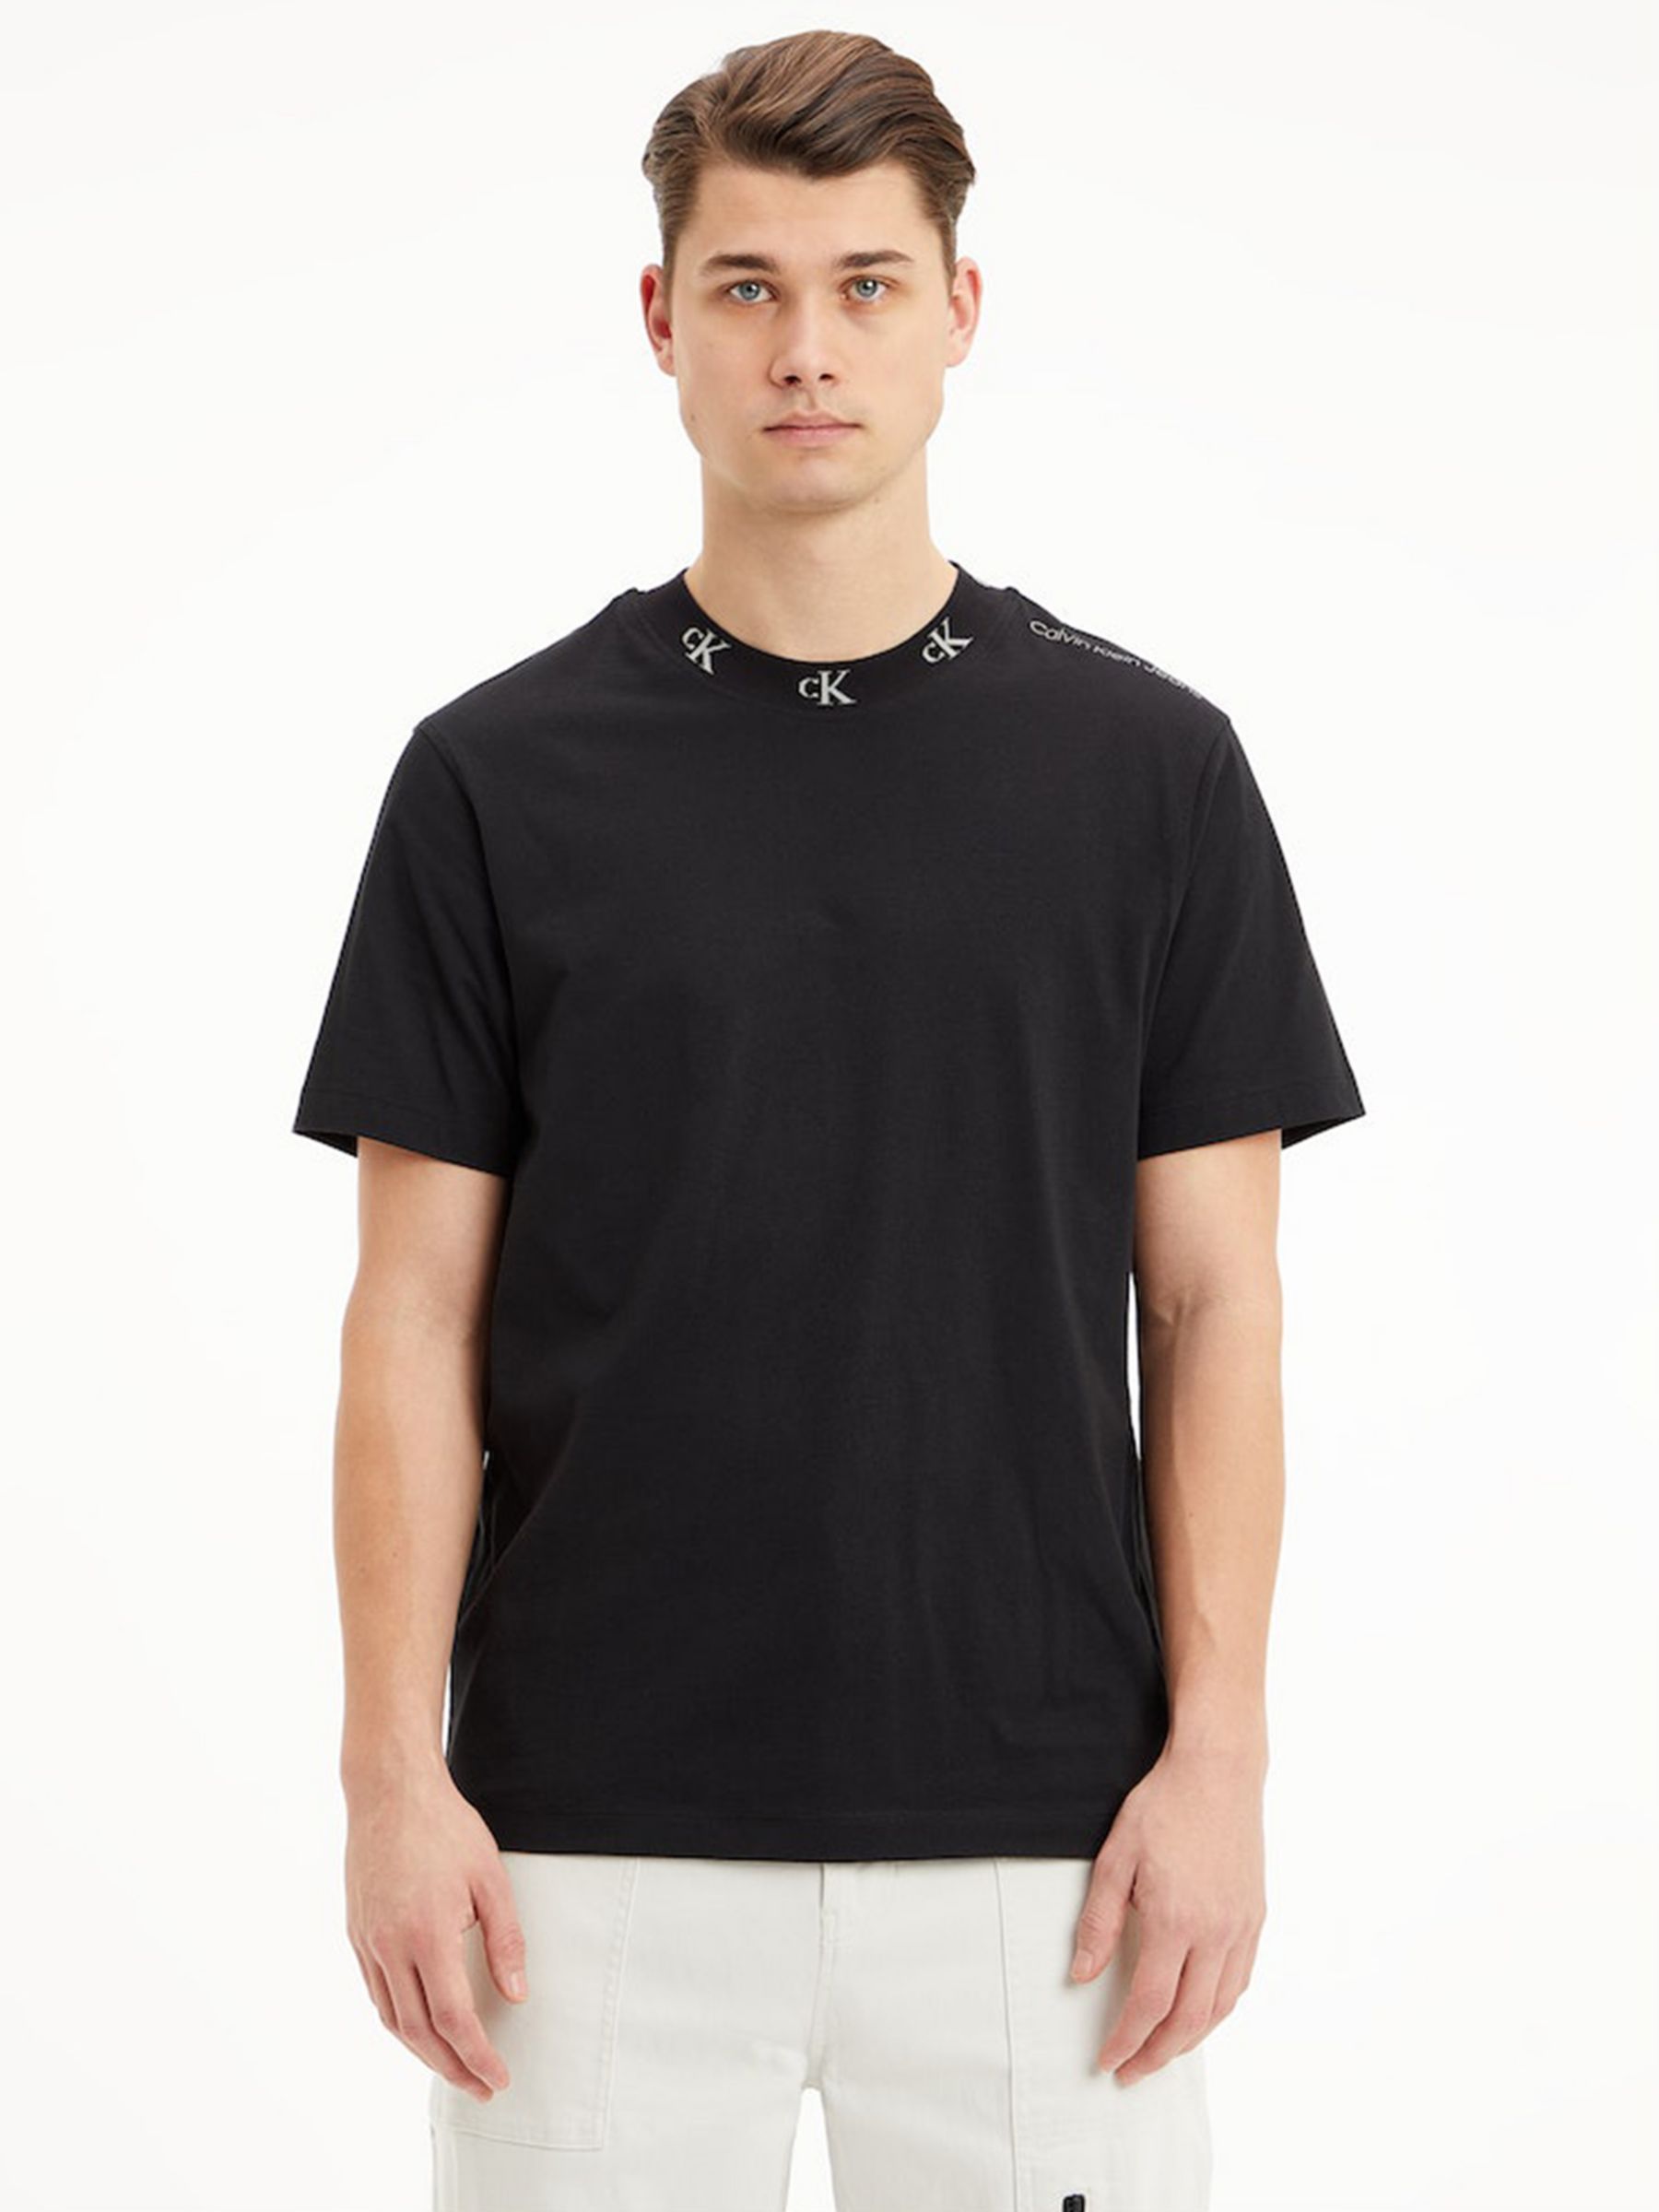 Forsvinde Calibre Stejl Calvin Klein Jeans Jacquard Logo T-Shirt, CK Black at John Lewis & Partners